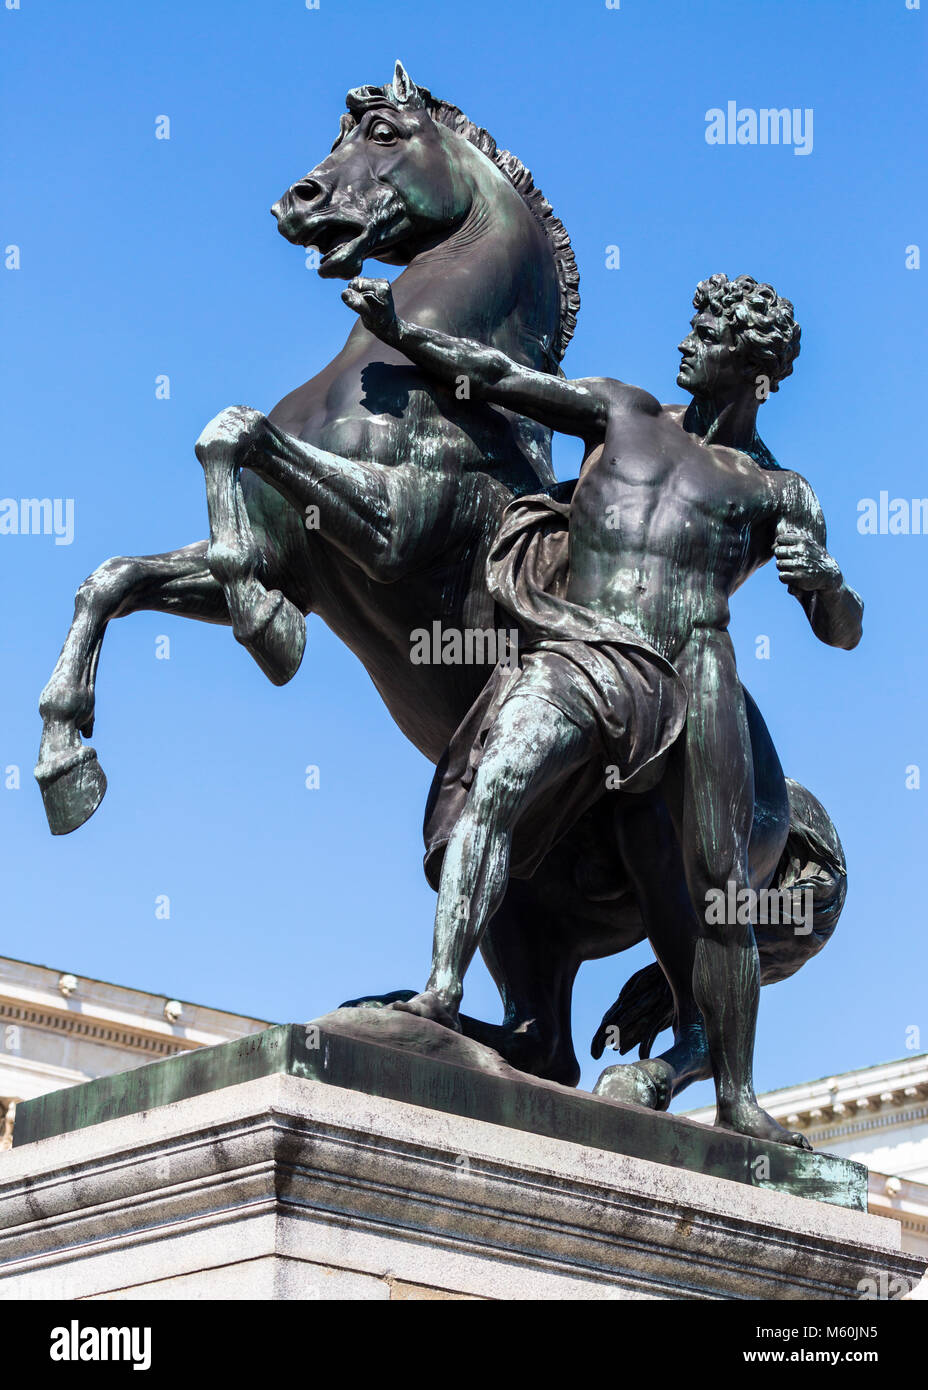 Das Pferd tamer und Skulptur außerhalb des Österreichischen Parlaments Gebäude, Ringstraße, Wien, Österreich. Stockfoto